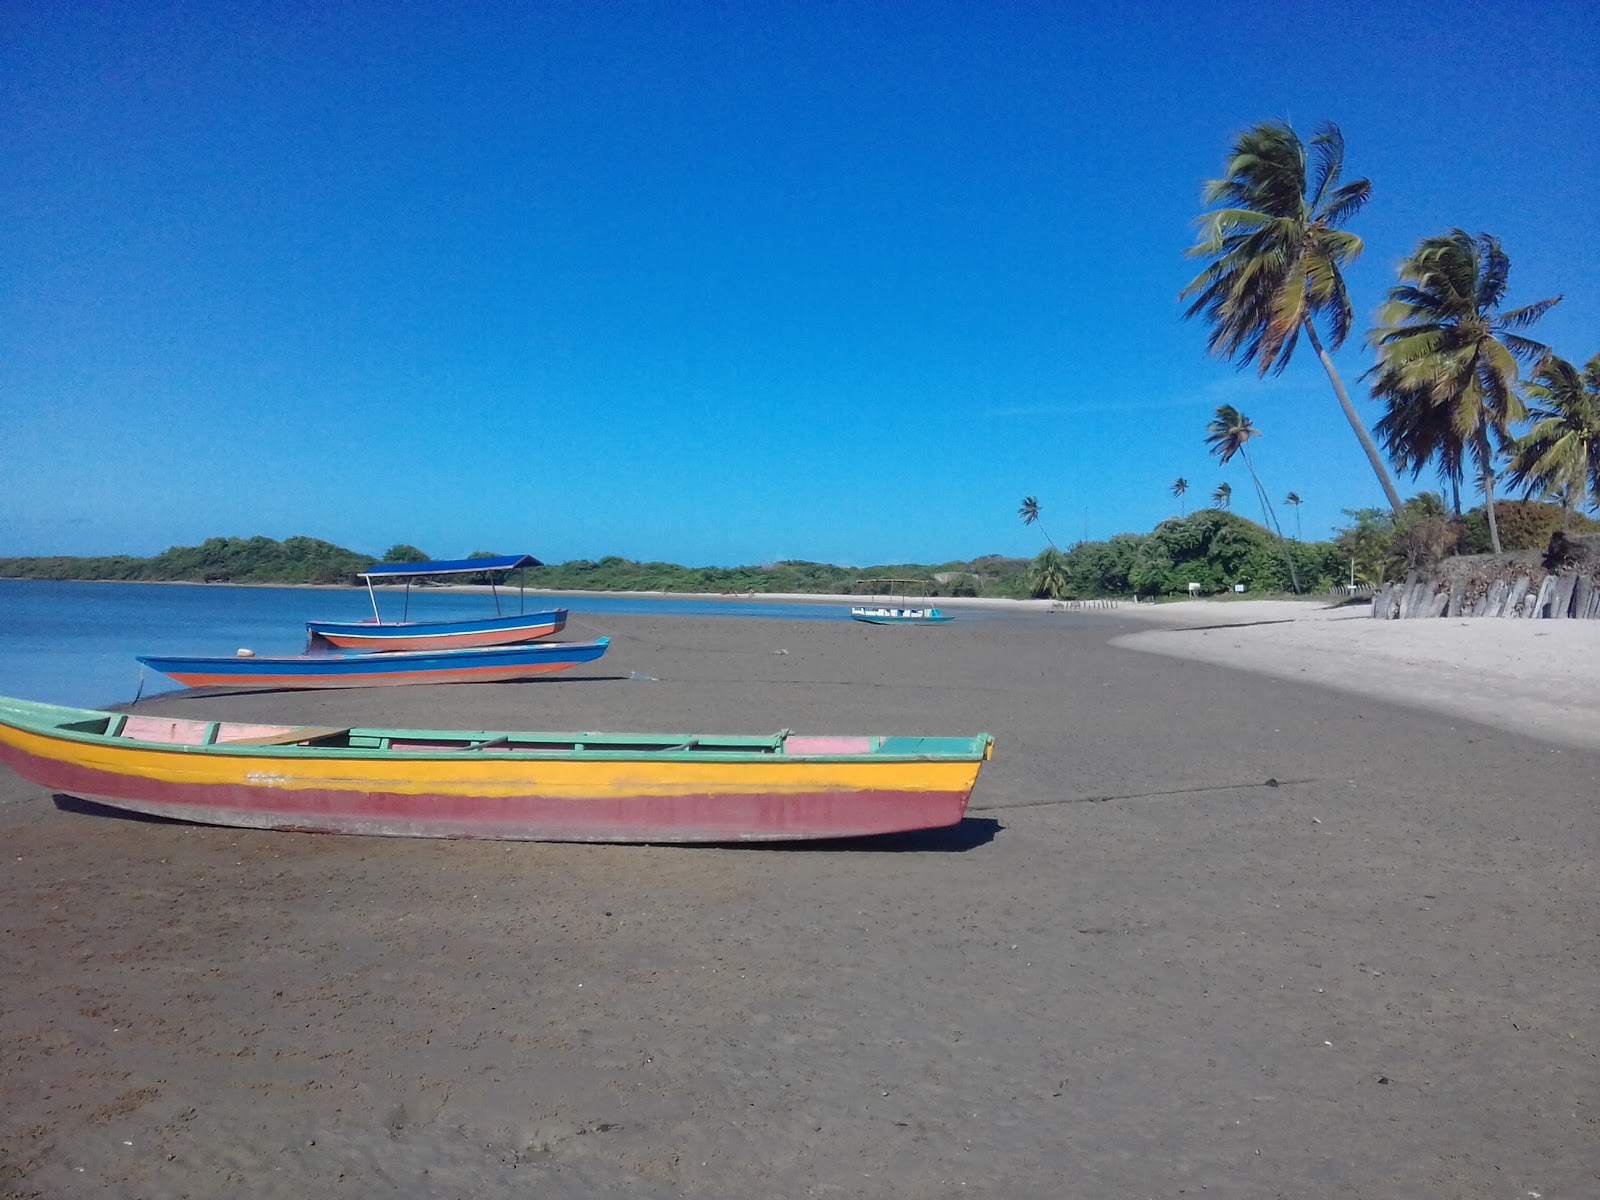 Rio Mamanguape Plajı'in fotoğrafı parlak kum yüzey ile